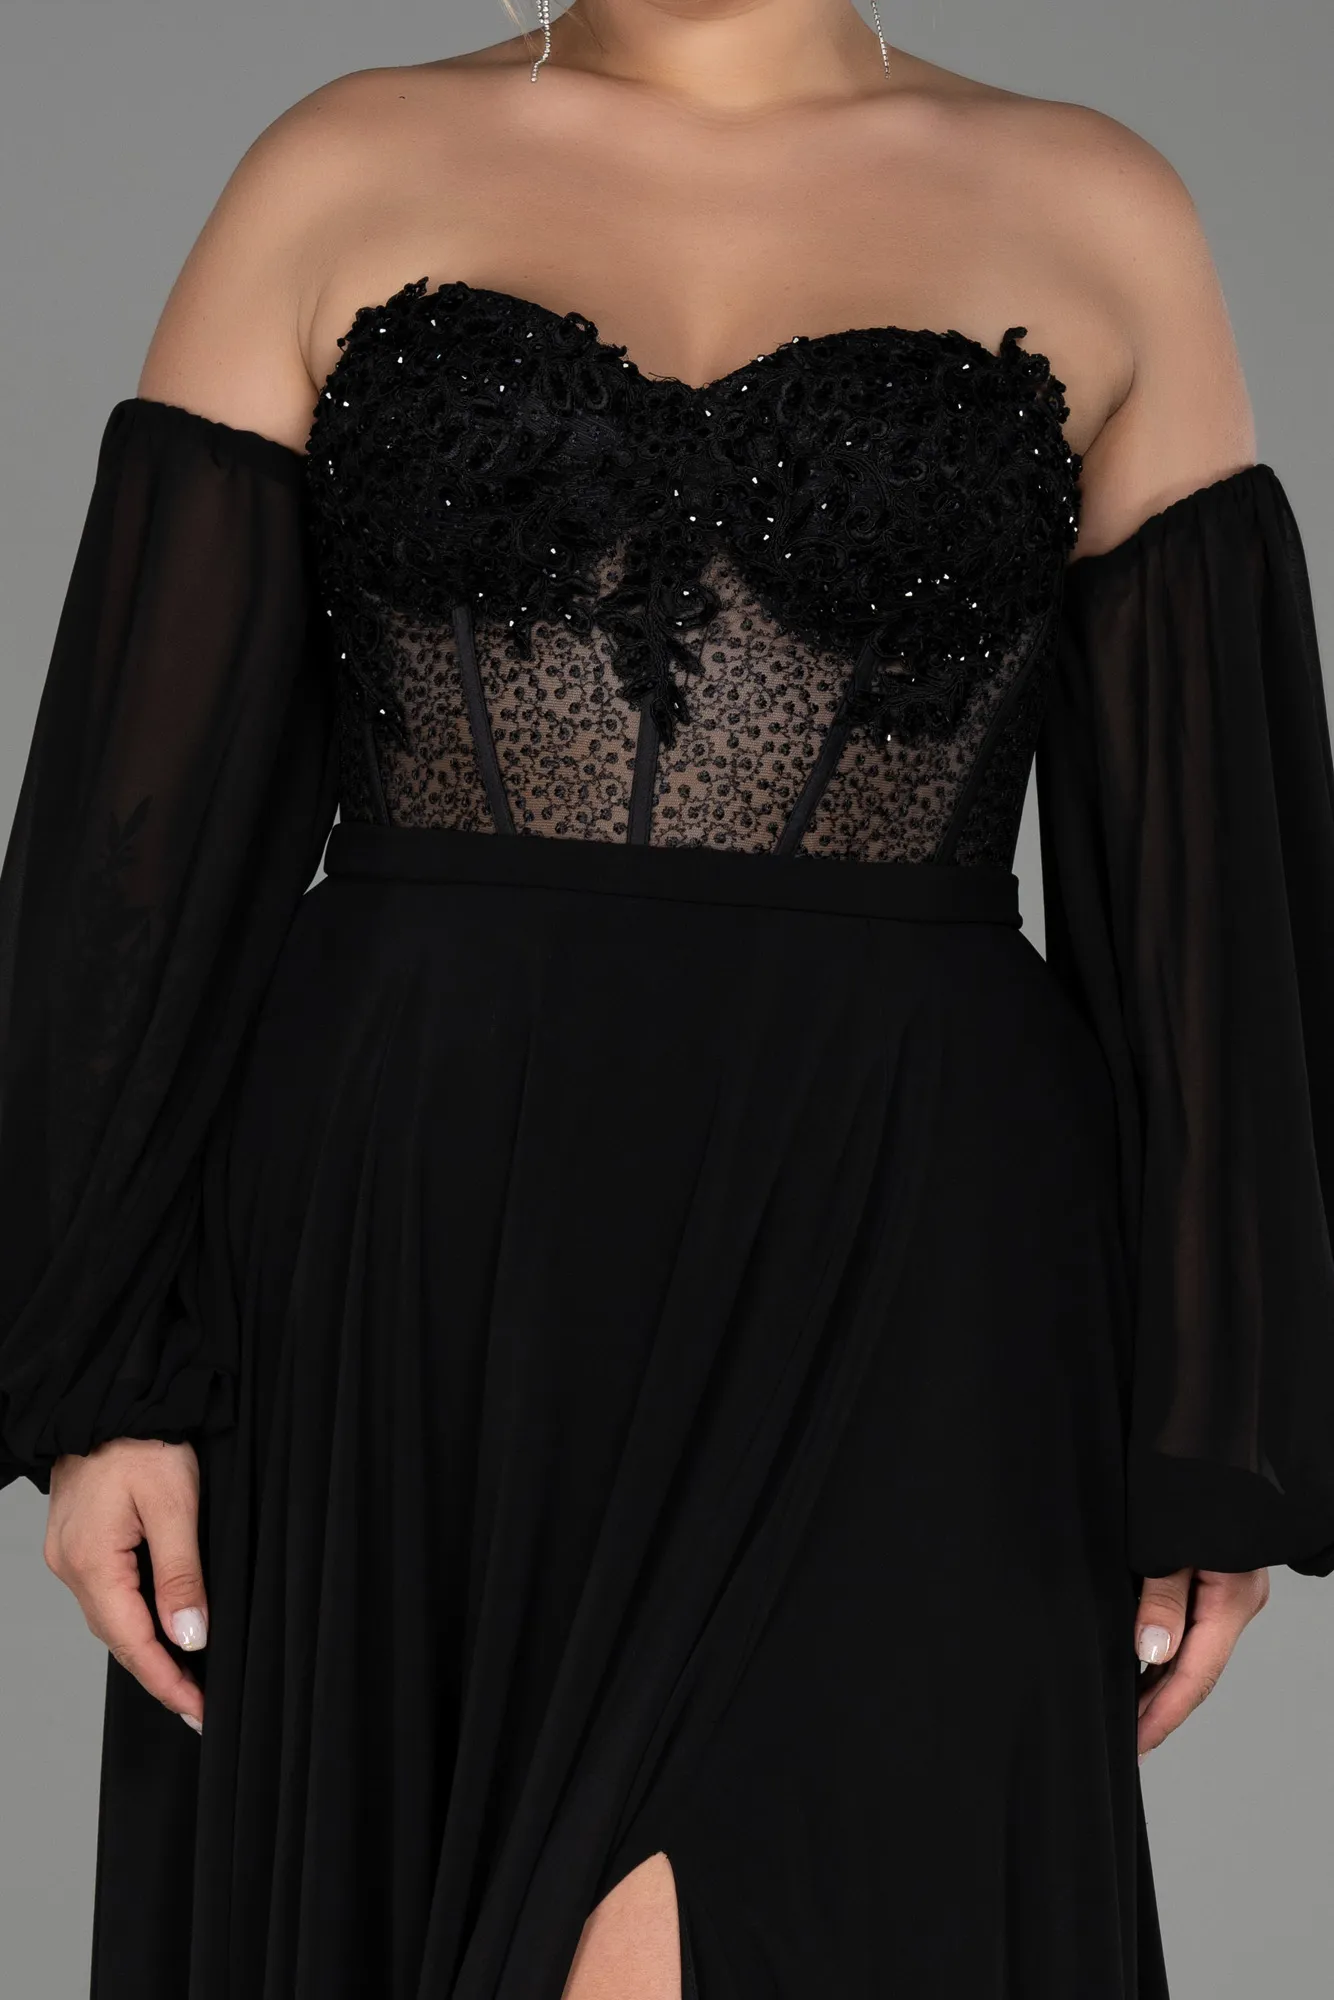 Black-Long Chiffon Plus Size Evening Dress ABU3451